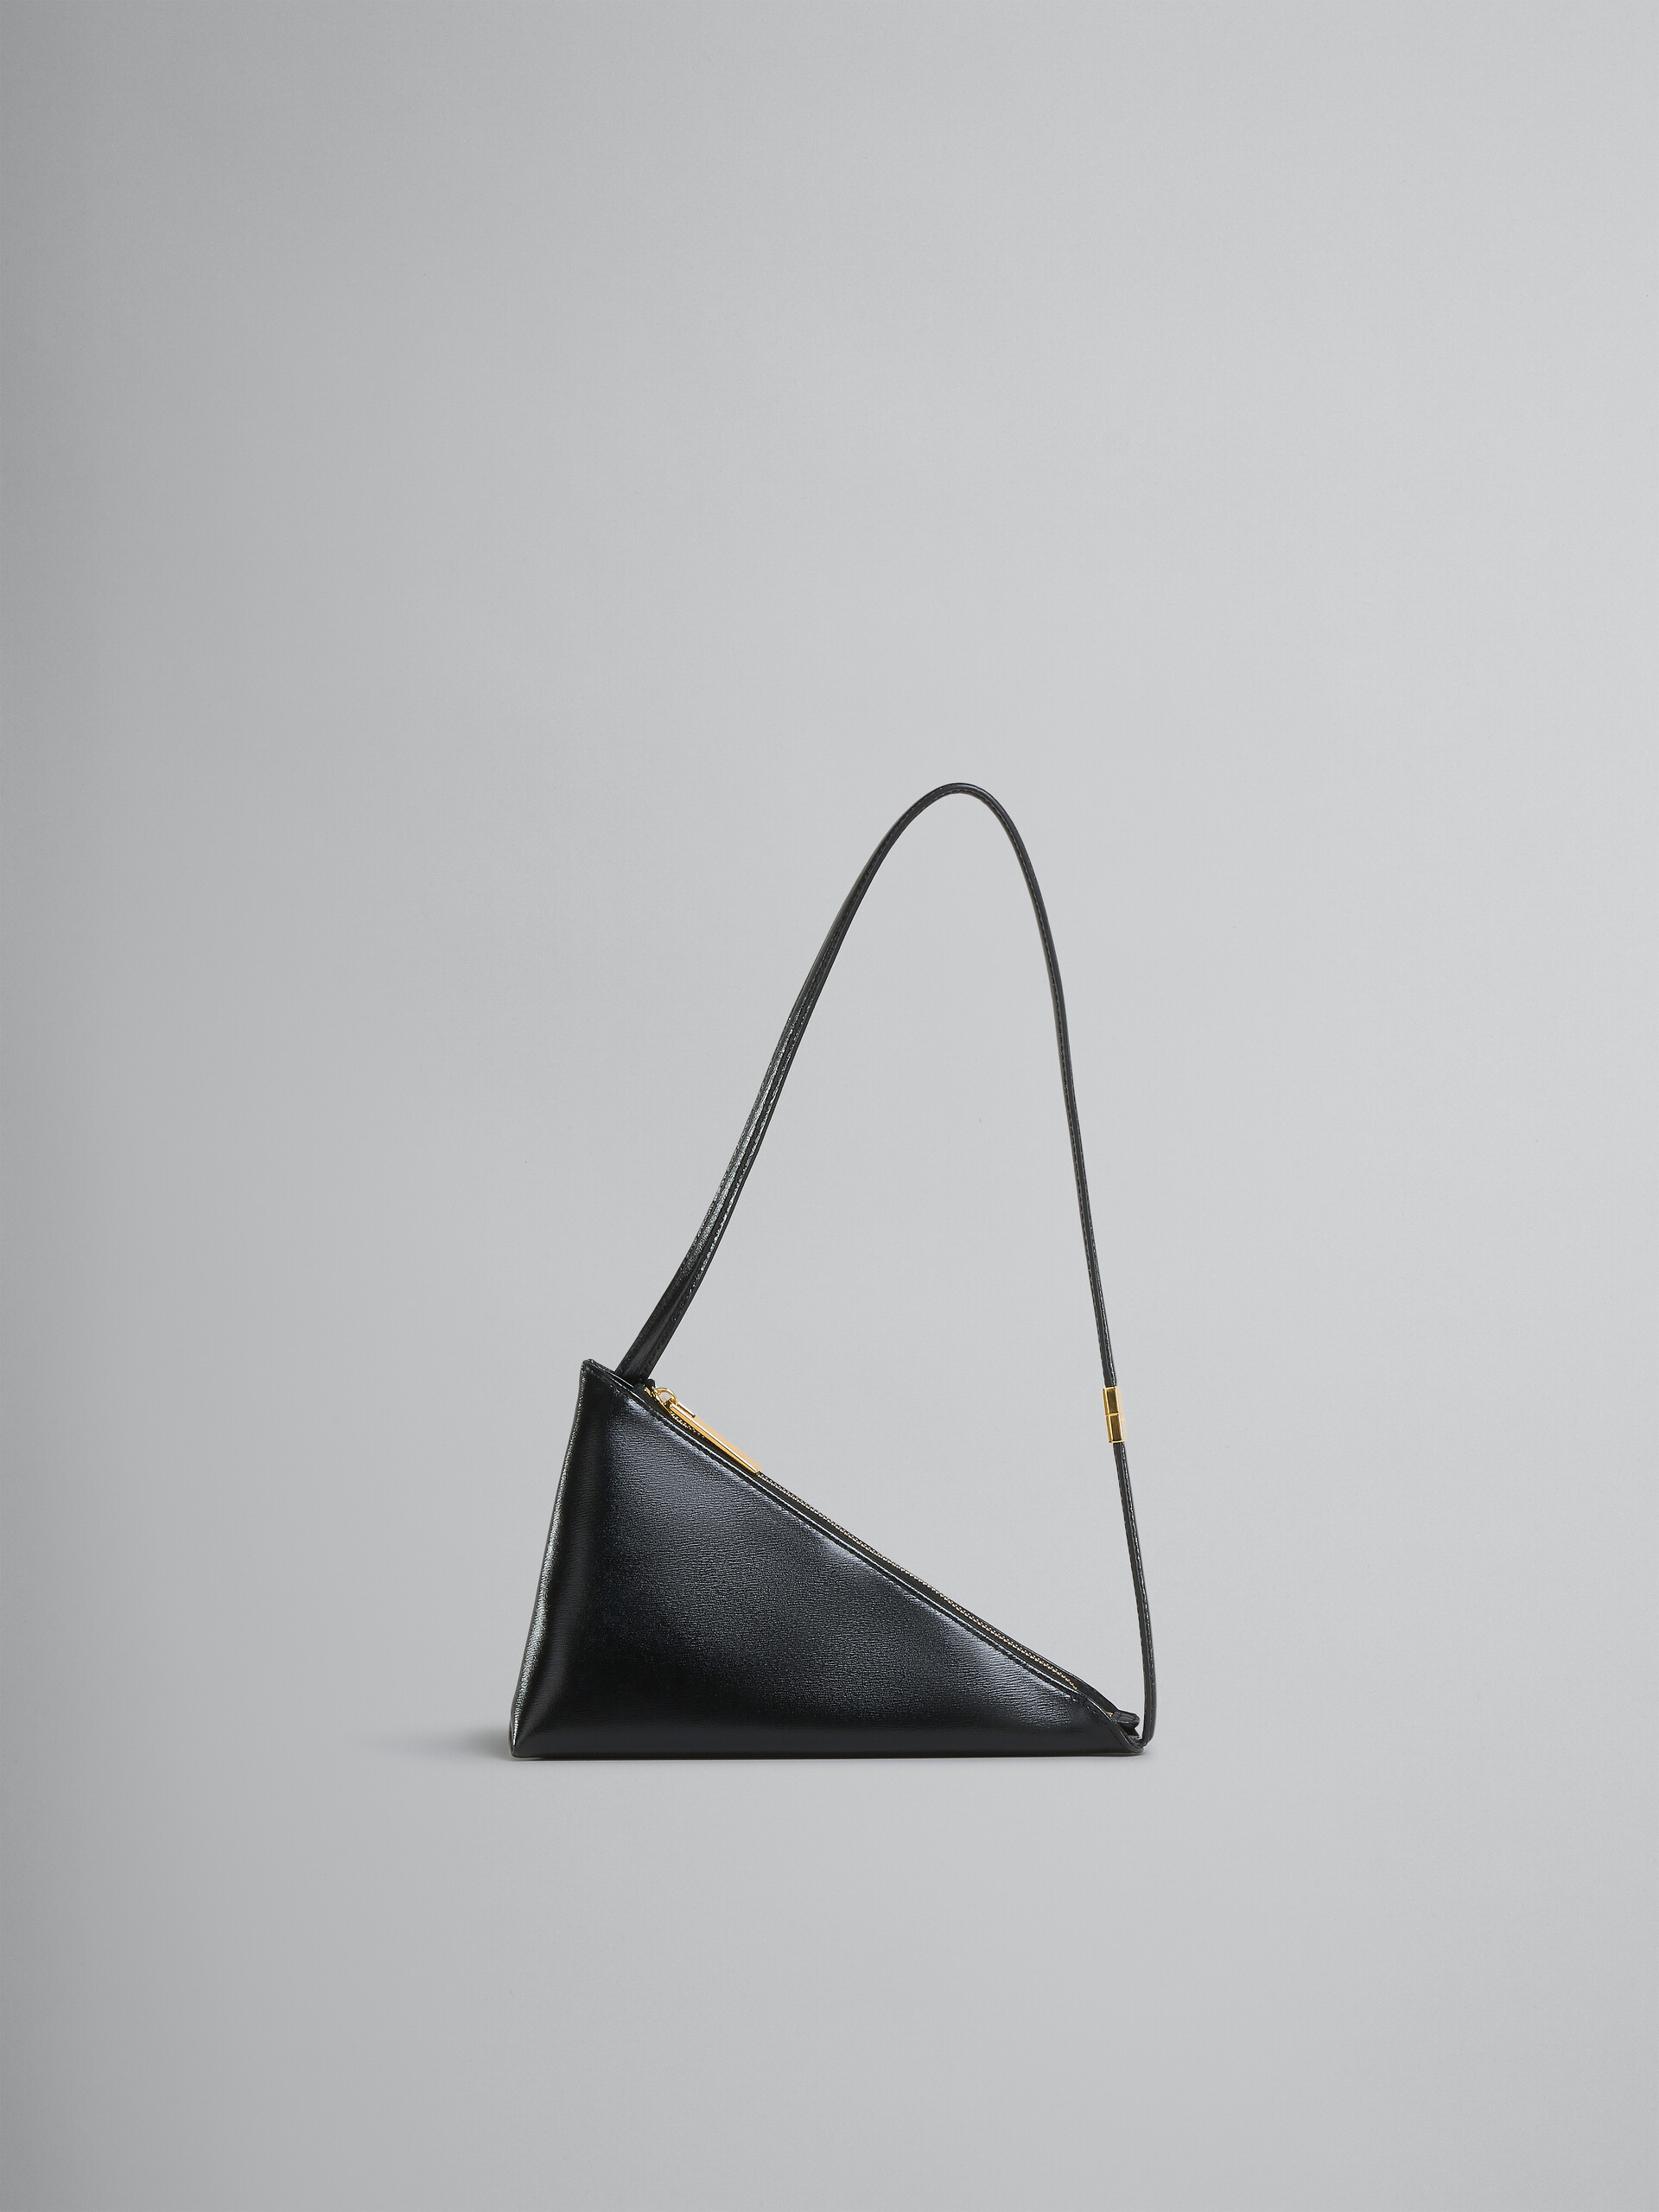 Sac à bandoulière Prisma Triangle en cuir noir - Sacs portés épaule - Image 1